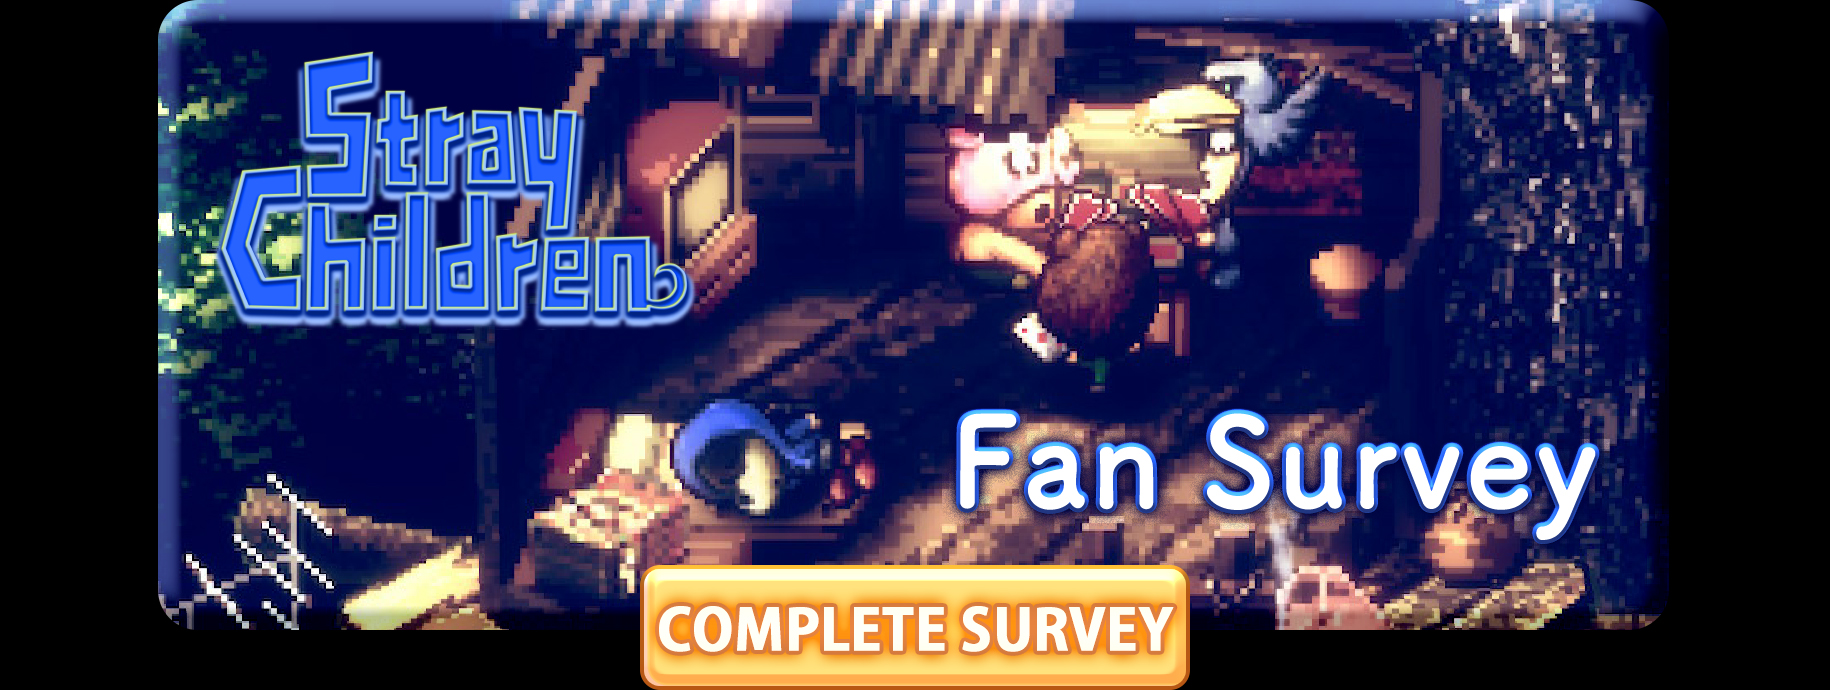 
							Submit Fan Survey
						